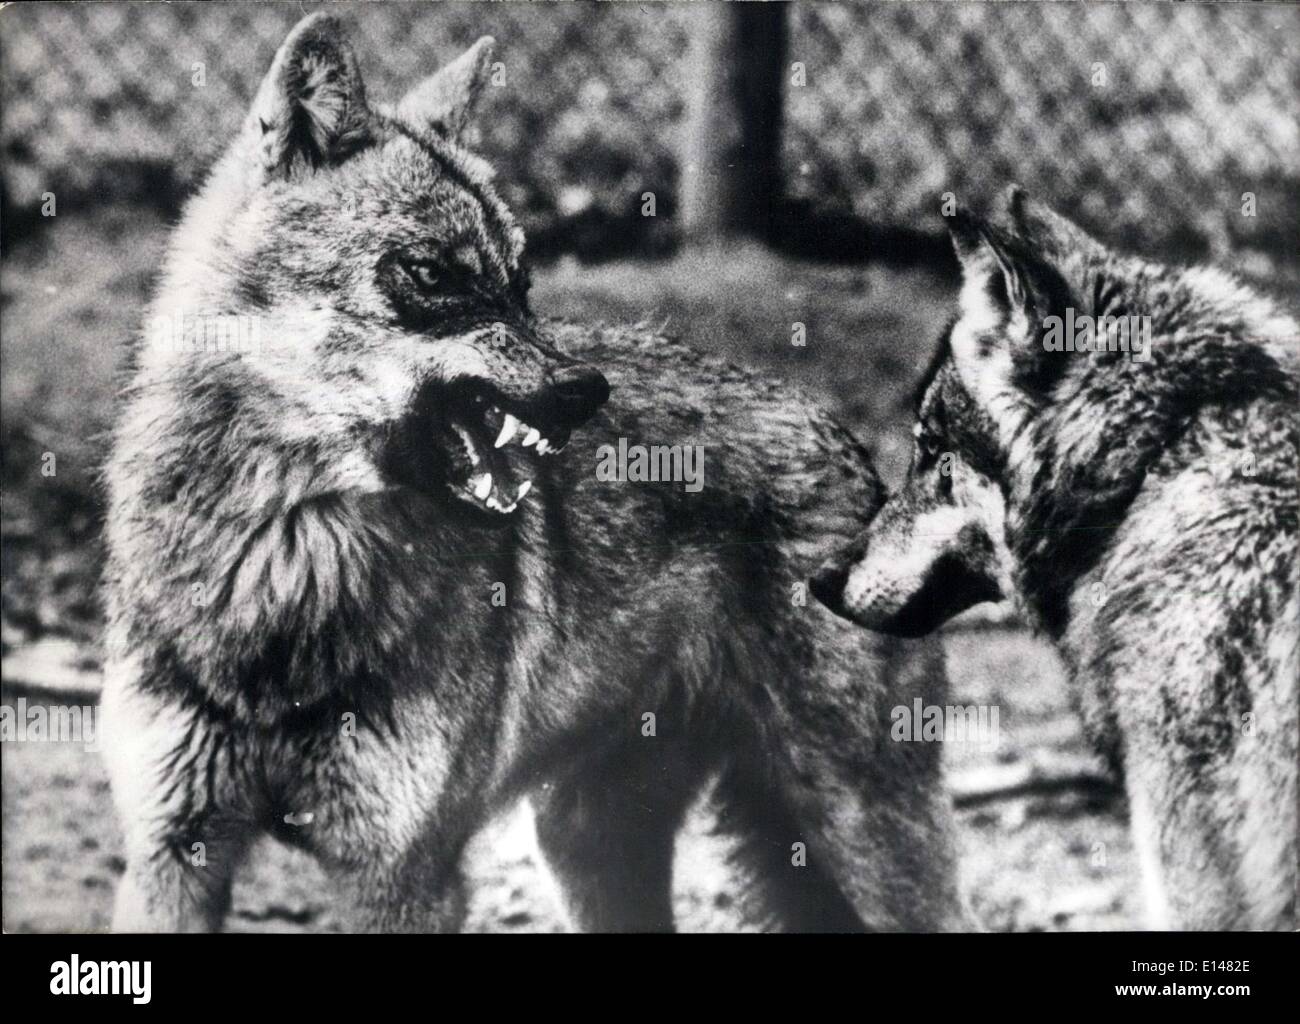 Apr. 17, 2012 - Una volta di più i lupi nella foresta bavarese, W-Germania: Il Parco Nazionale Bayerischer Wald-Bavarian foresta-che è stata in costruzione per un anno ora ha ottenuto una maggiore attrazione. Una volta di più ci sono lupi nelle foreste, dove l'ultimo Wolf è stato sterminato 150 anni fa. I lupi non naturalmente vivere liberamente nel parco nazionale, ma in una confettura in Waldhauser, un piccolo villaggio nel cuore del parco nazionale. Co-abitante in casa e di conservare e membro del pack è il dottor Erick Zimen, un scienziato comportamentale al Max-Planck-Istituto di psicologia del comportamento Foto Stock